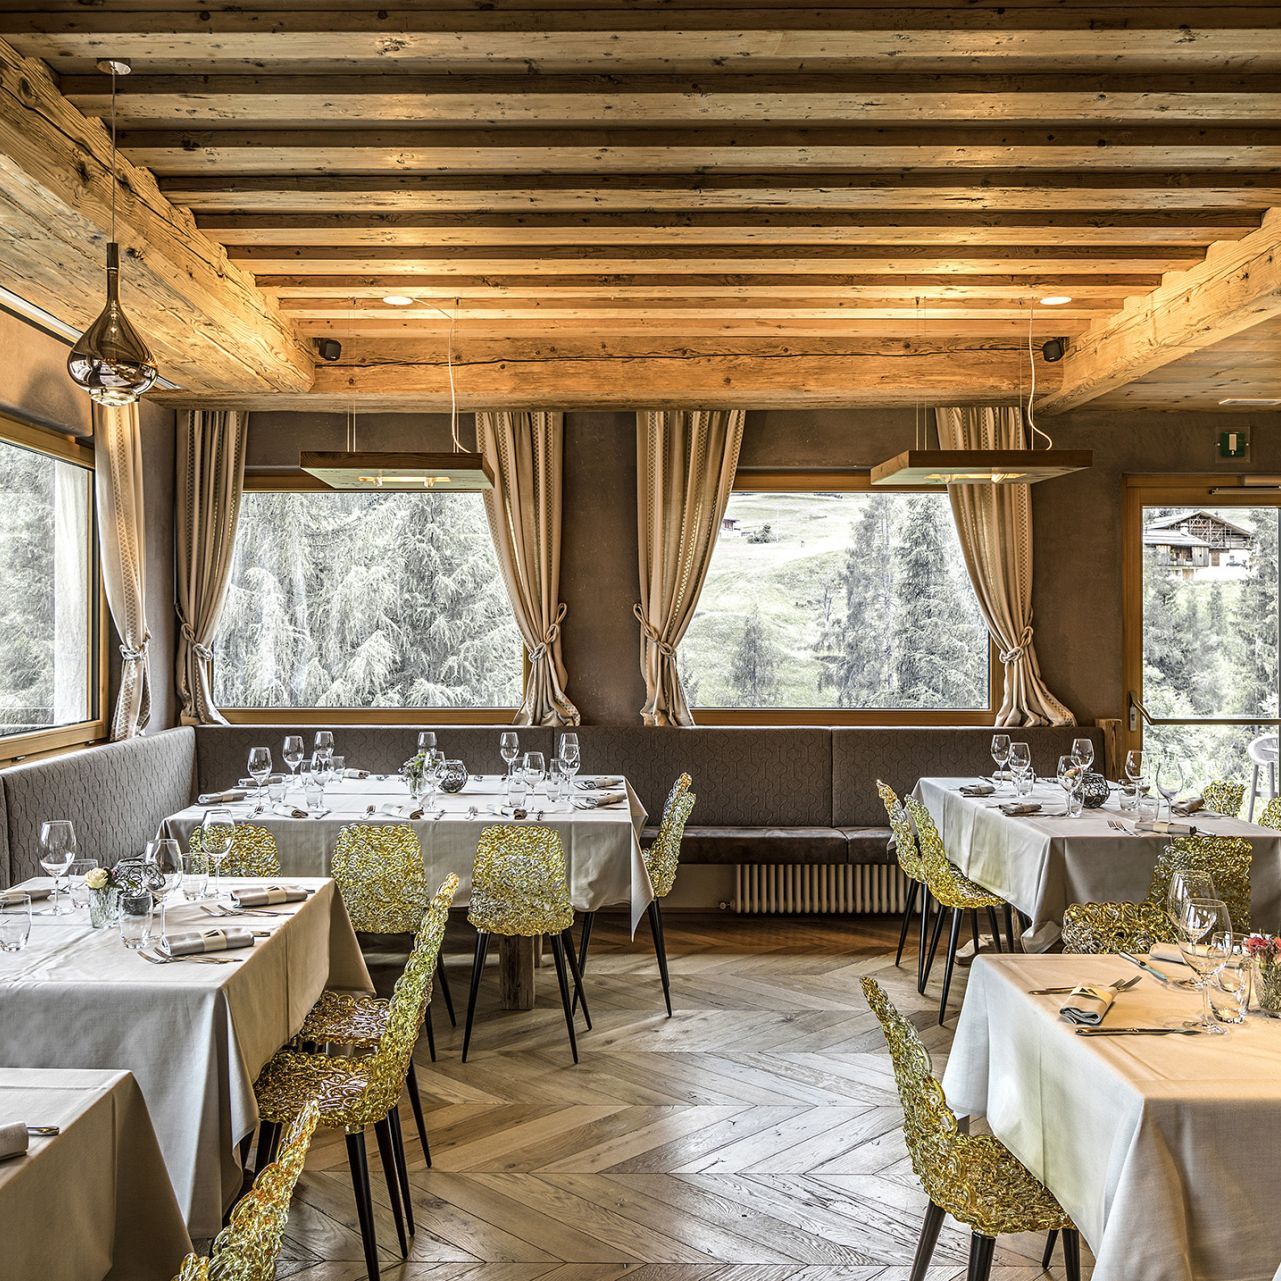   Blue Velvet  poltroncine in velluto e
  Gina  sedie in policarbonato color oro, arredano il ristorante.Claudio Alverà Patron and Chef del Dolomiti Lodge Alverà. 
 